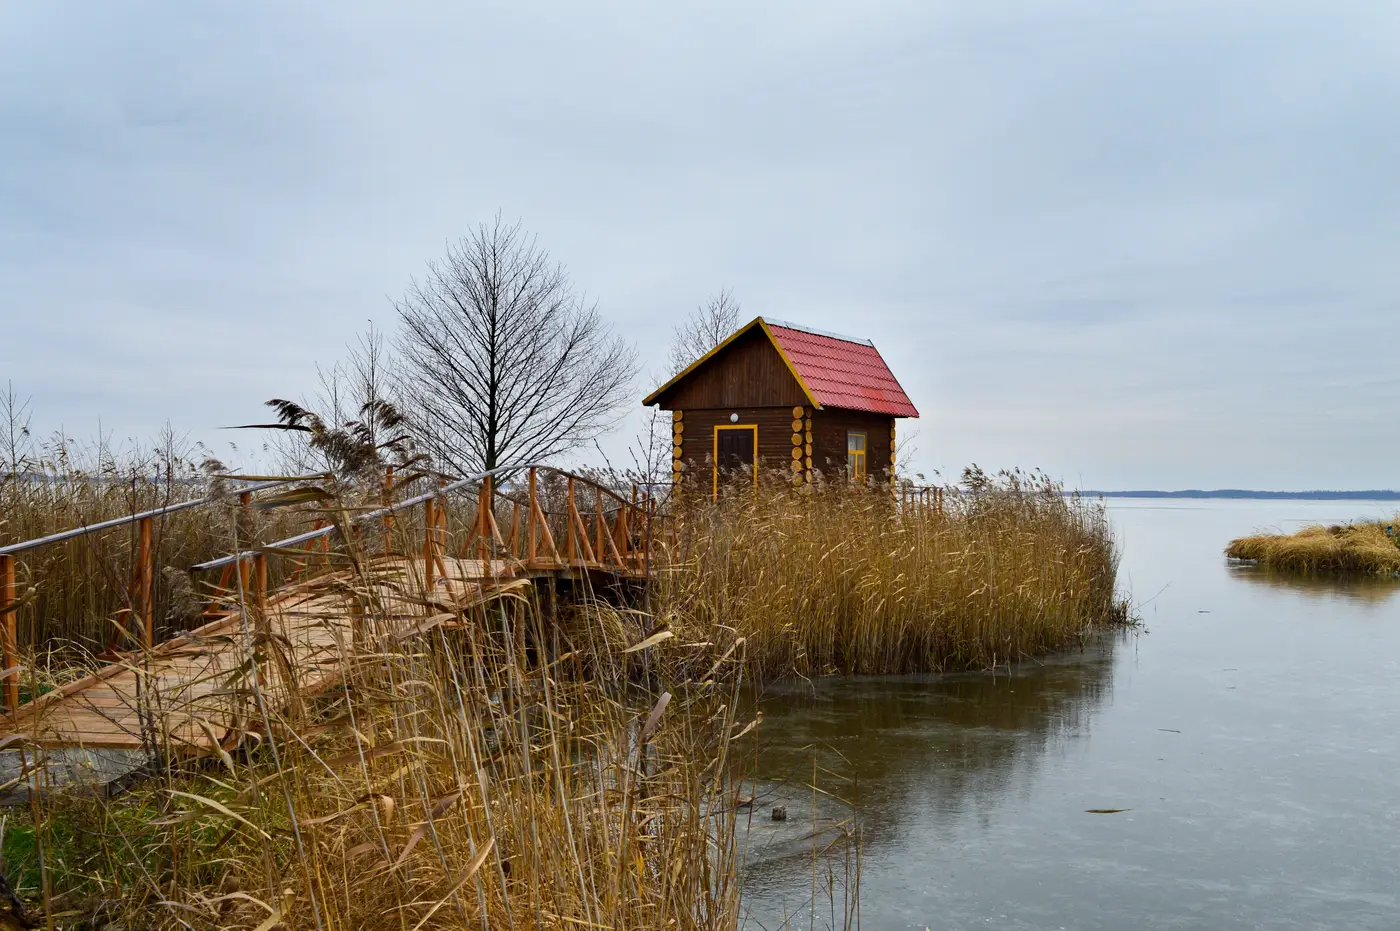 Озеро Выгонощанское